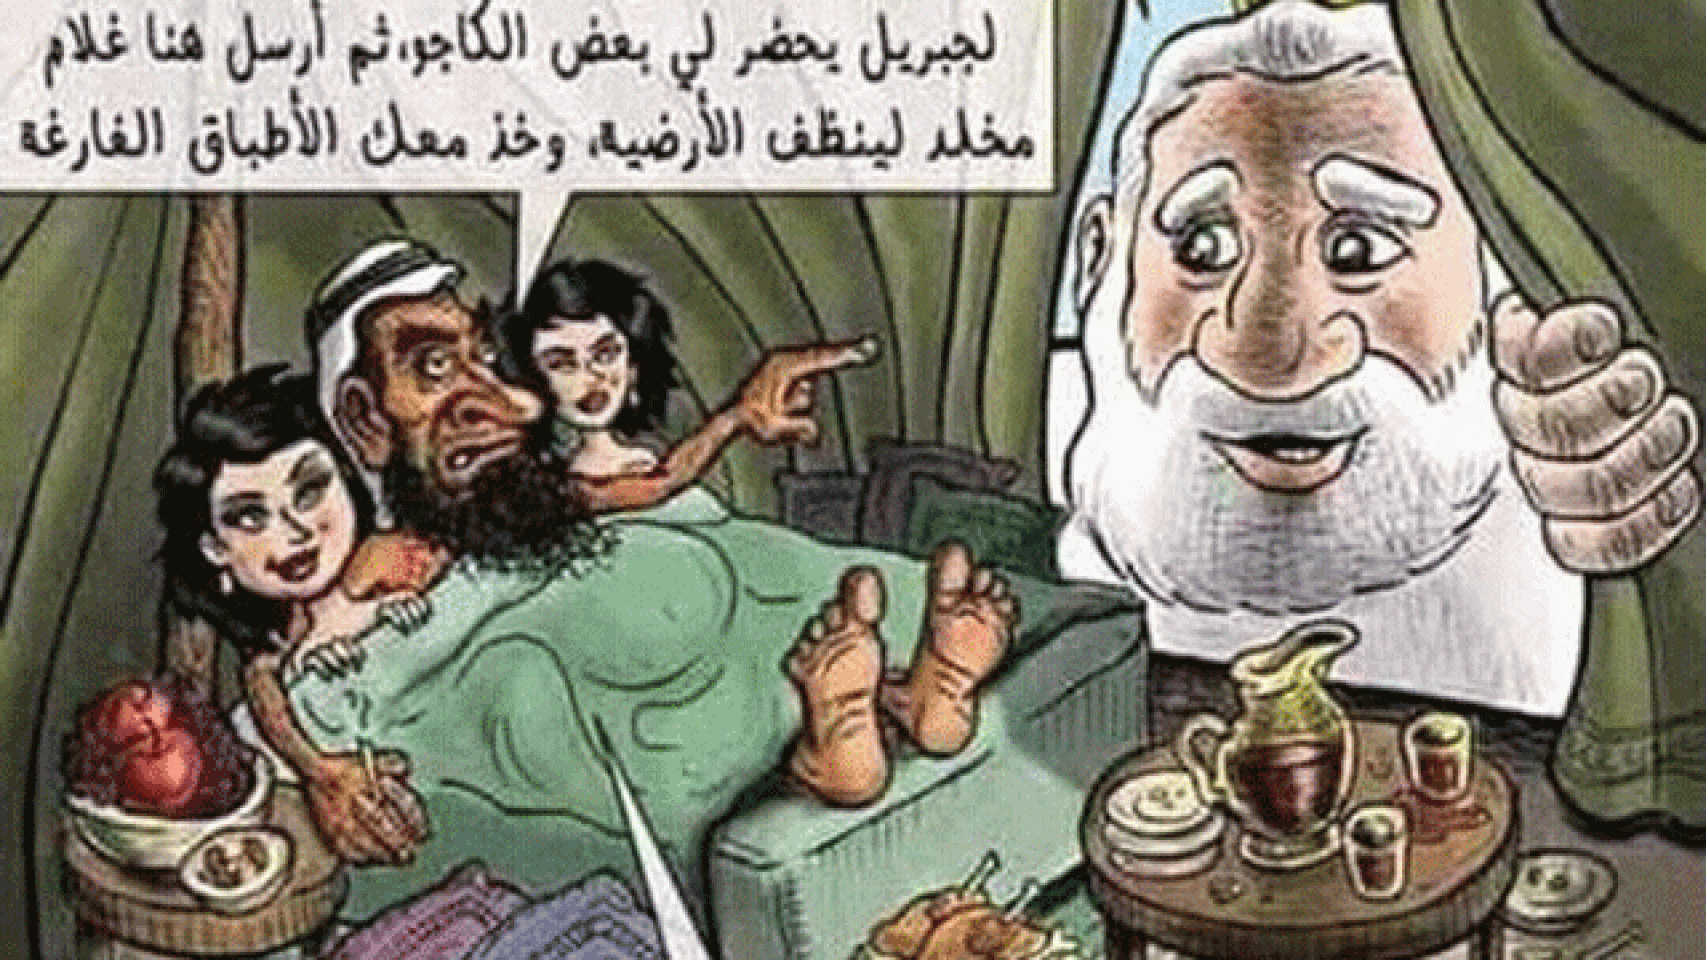 Imagen de la caricatura considerada blasfema